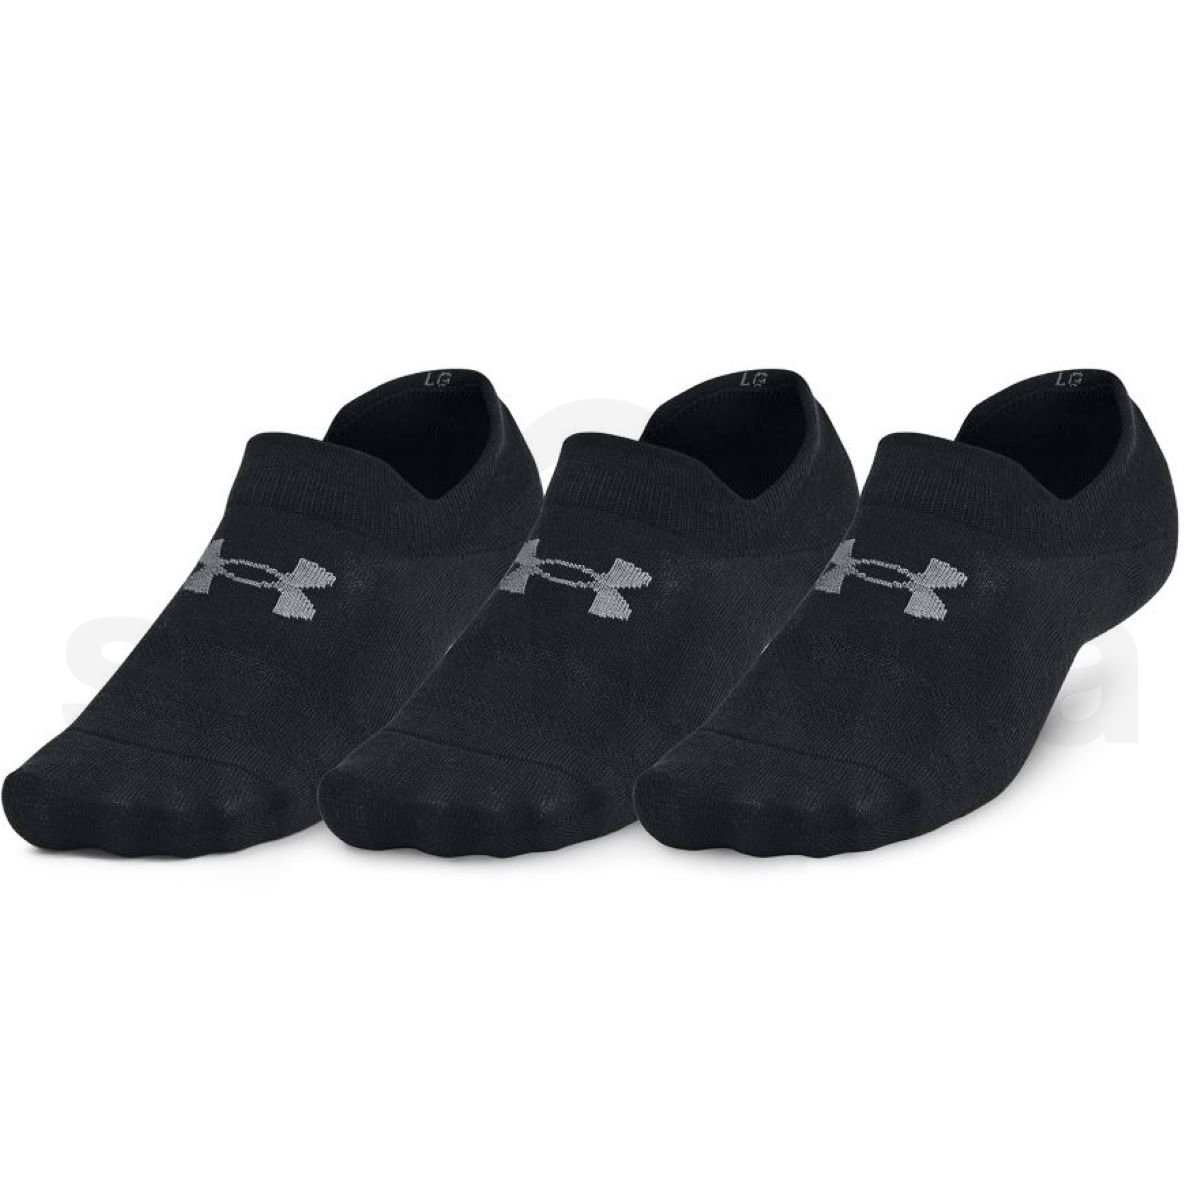 Ponožky Under Armour Essential UltraLowTab 3pk - černá